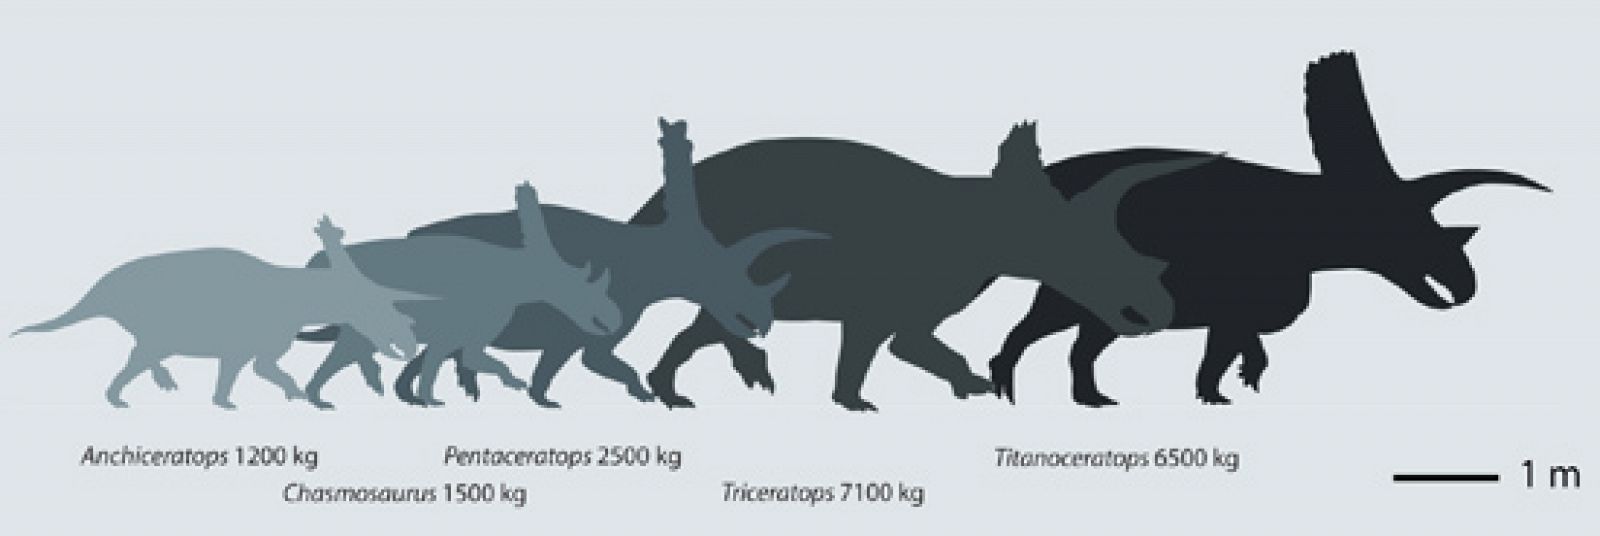 Comparativa de los grandes dinosaurios cornudos